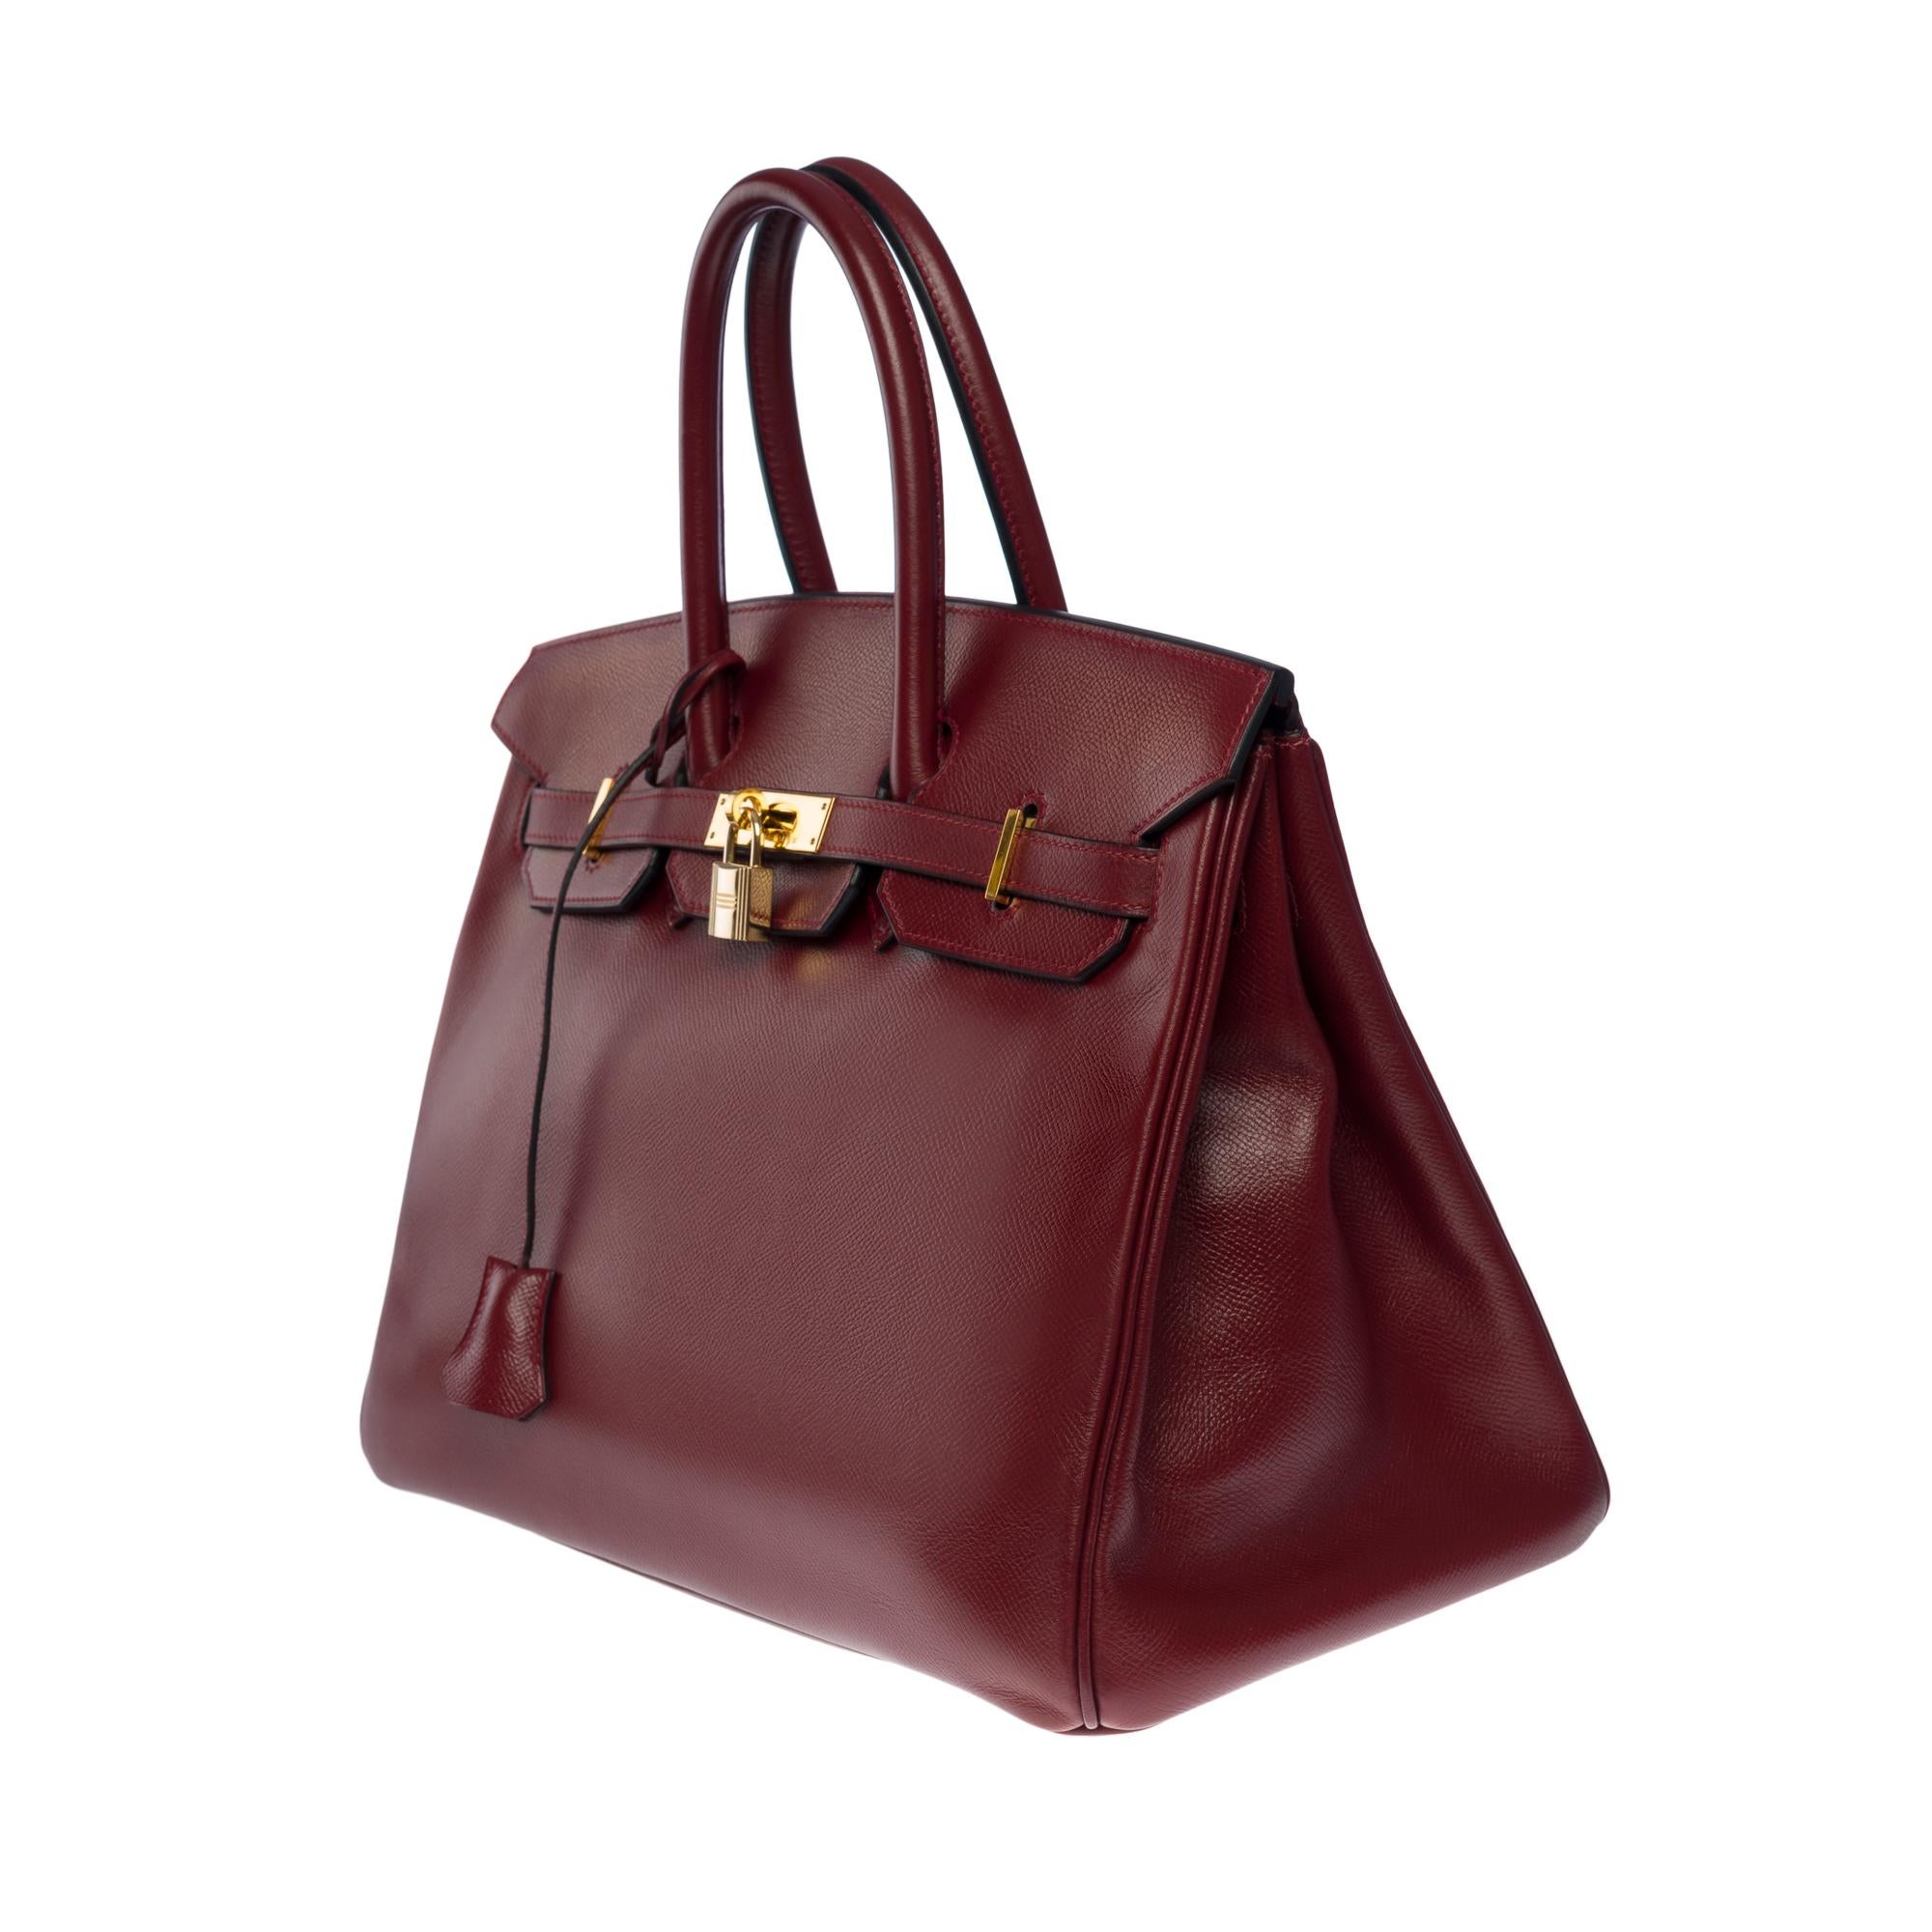 Stunning Hermès Birkin 35 handbag in Rouge H (Burgundy) epsom leather, GHW In Good Condition In Paris, IDF